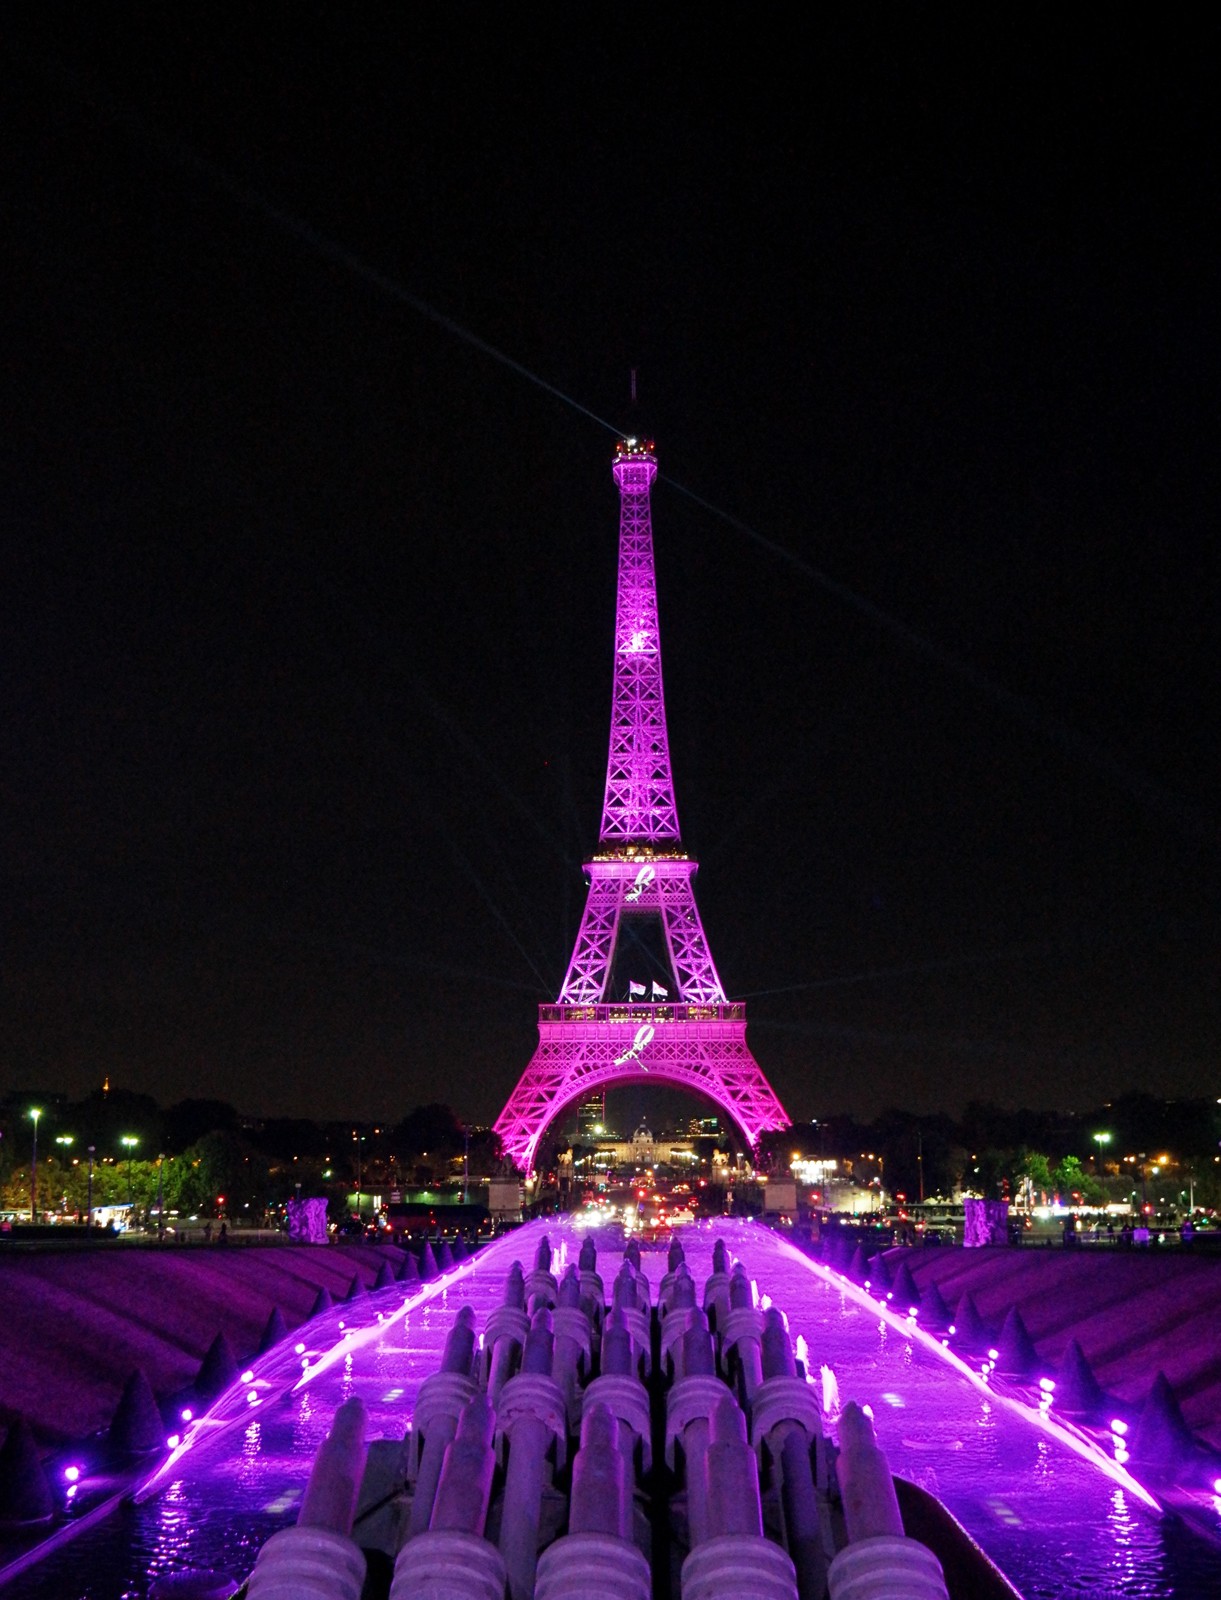 Illumination Tour Eiffel rose Pink Eiffel Tower pour Octobre Rose 2015 Ruban Rose soirée de lancement association Parlons-en cancer du sein photo usofparis blog